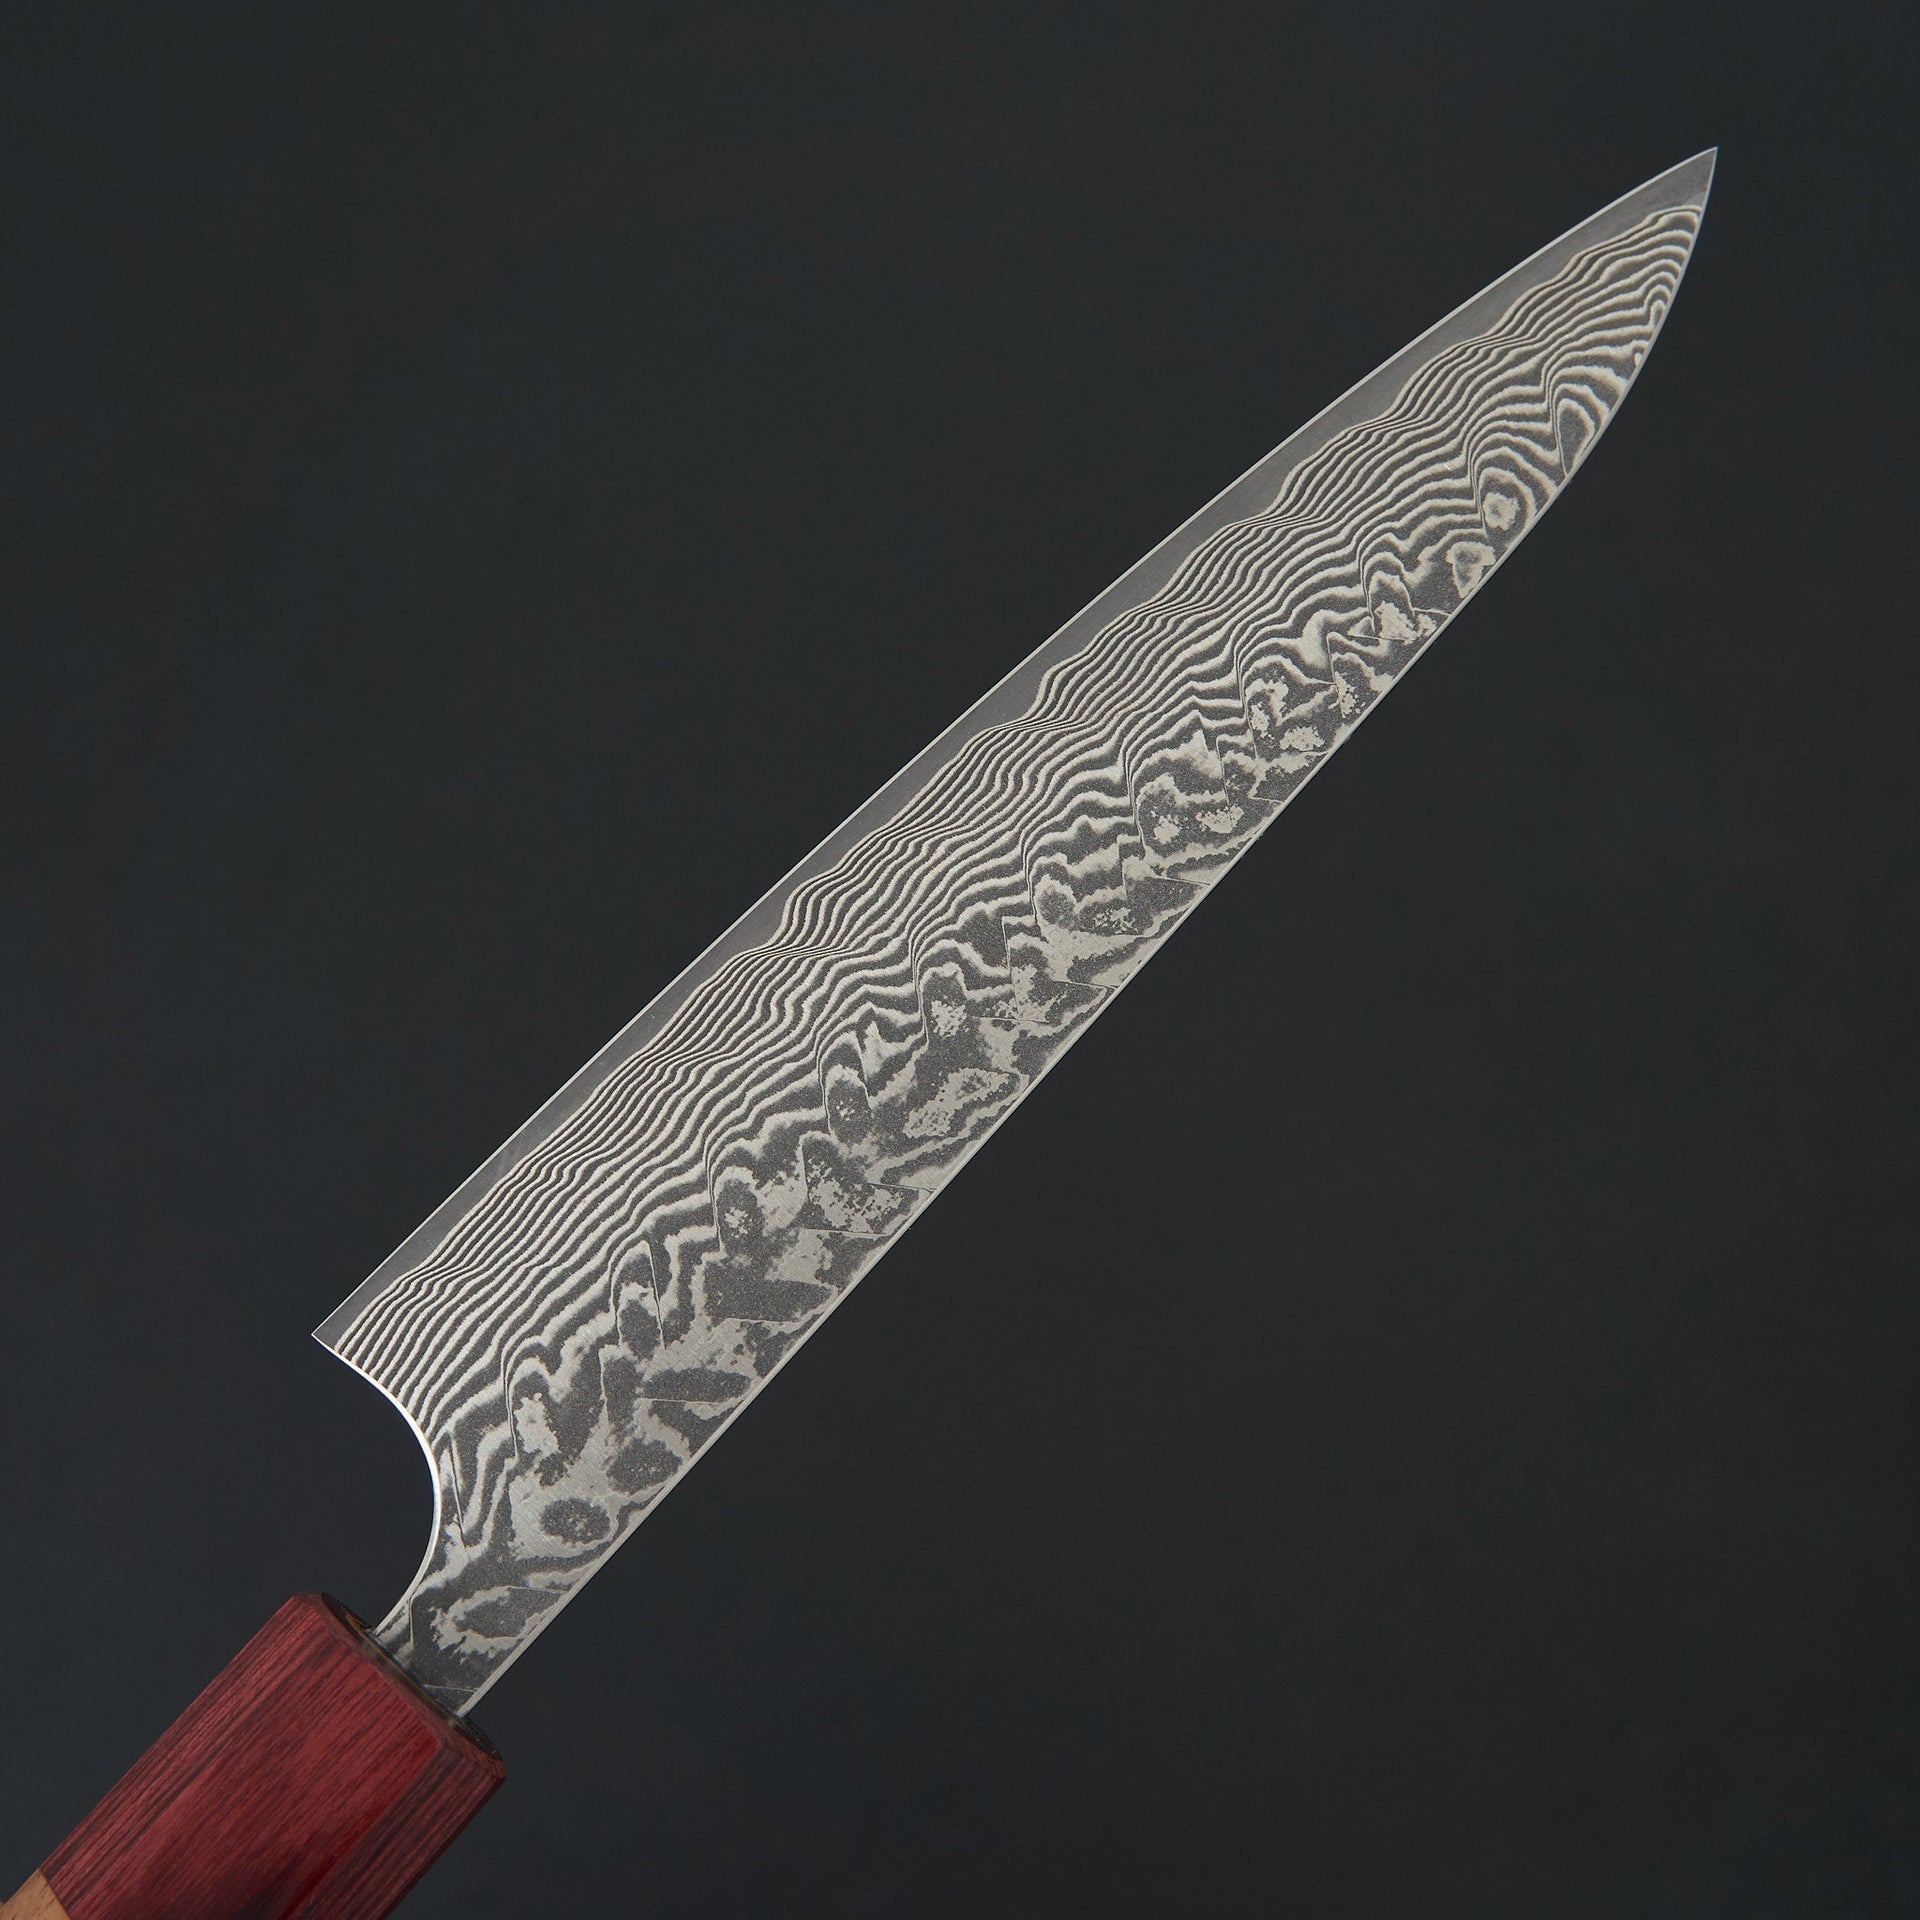 Kato SG2 Damascus Petty 150mm-Knife-Yoshimi Kato-Carbon Knife Co